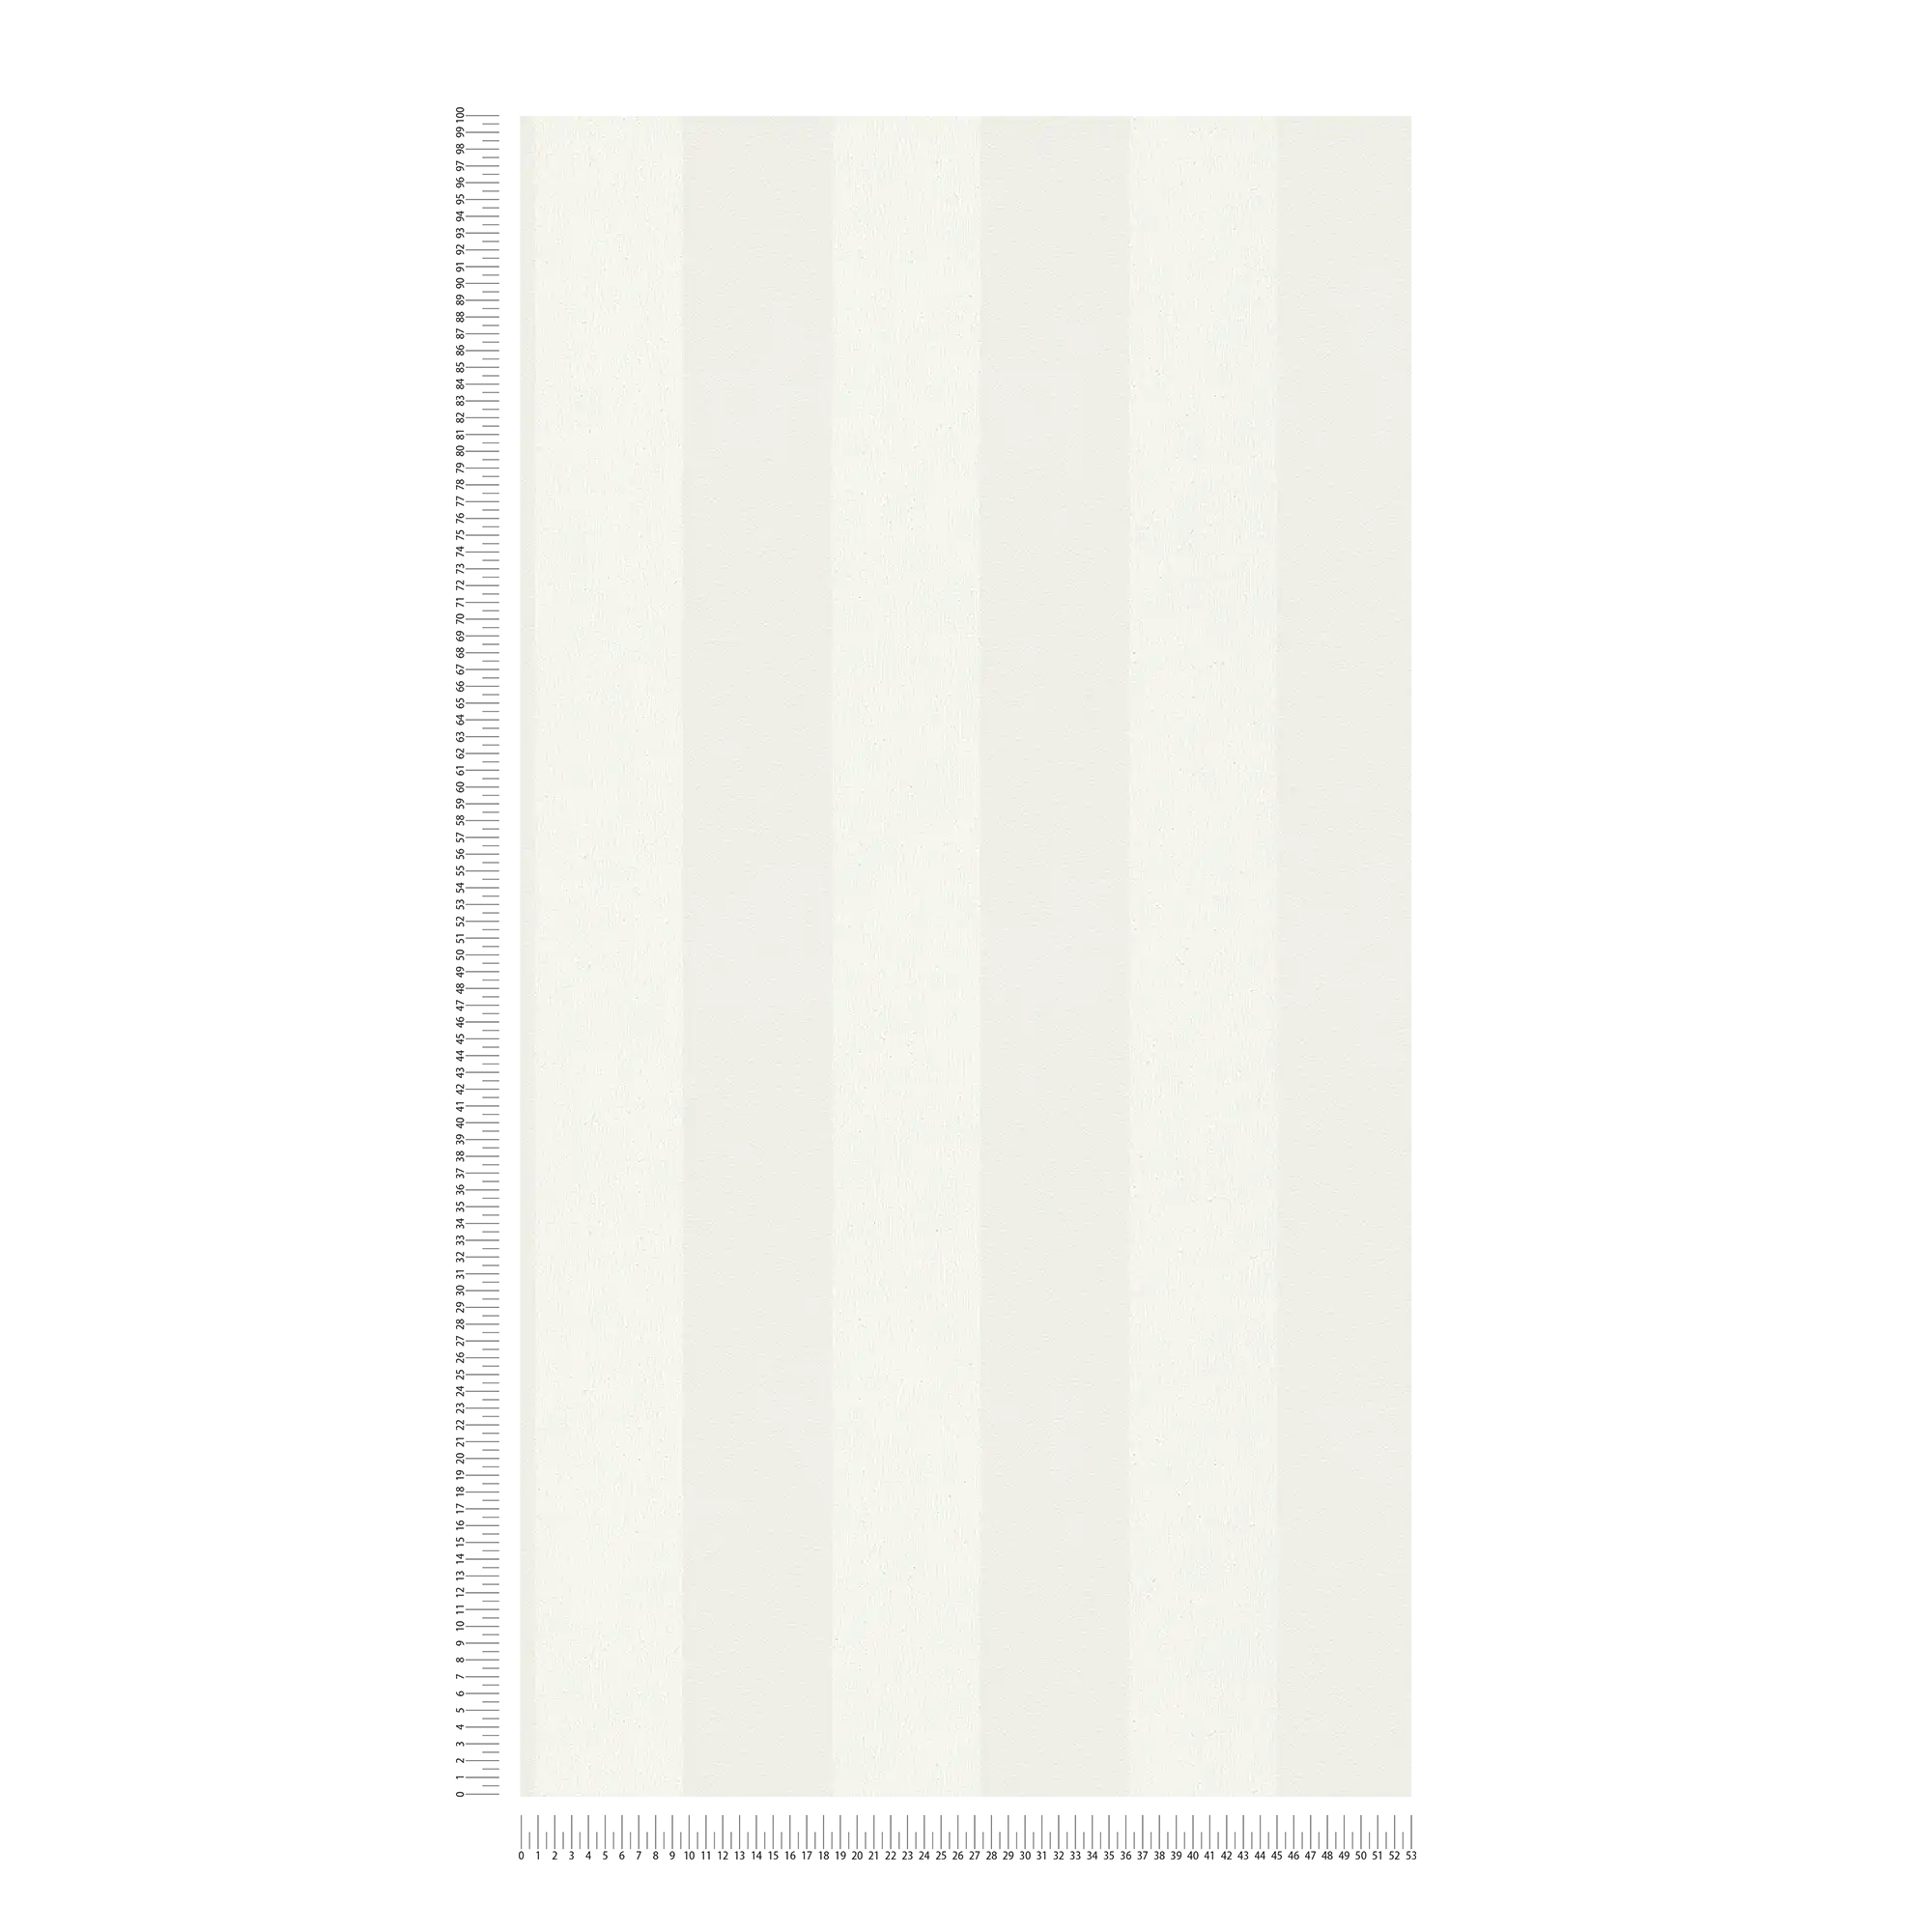             Papel pintado de rayas blancas con patrón de estructura y patrón de rayas en bloque
        